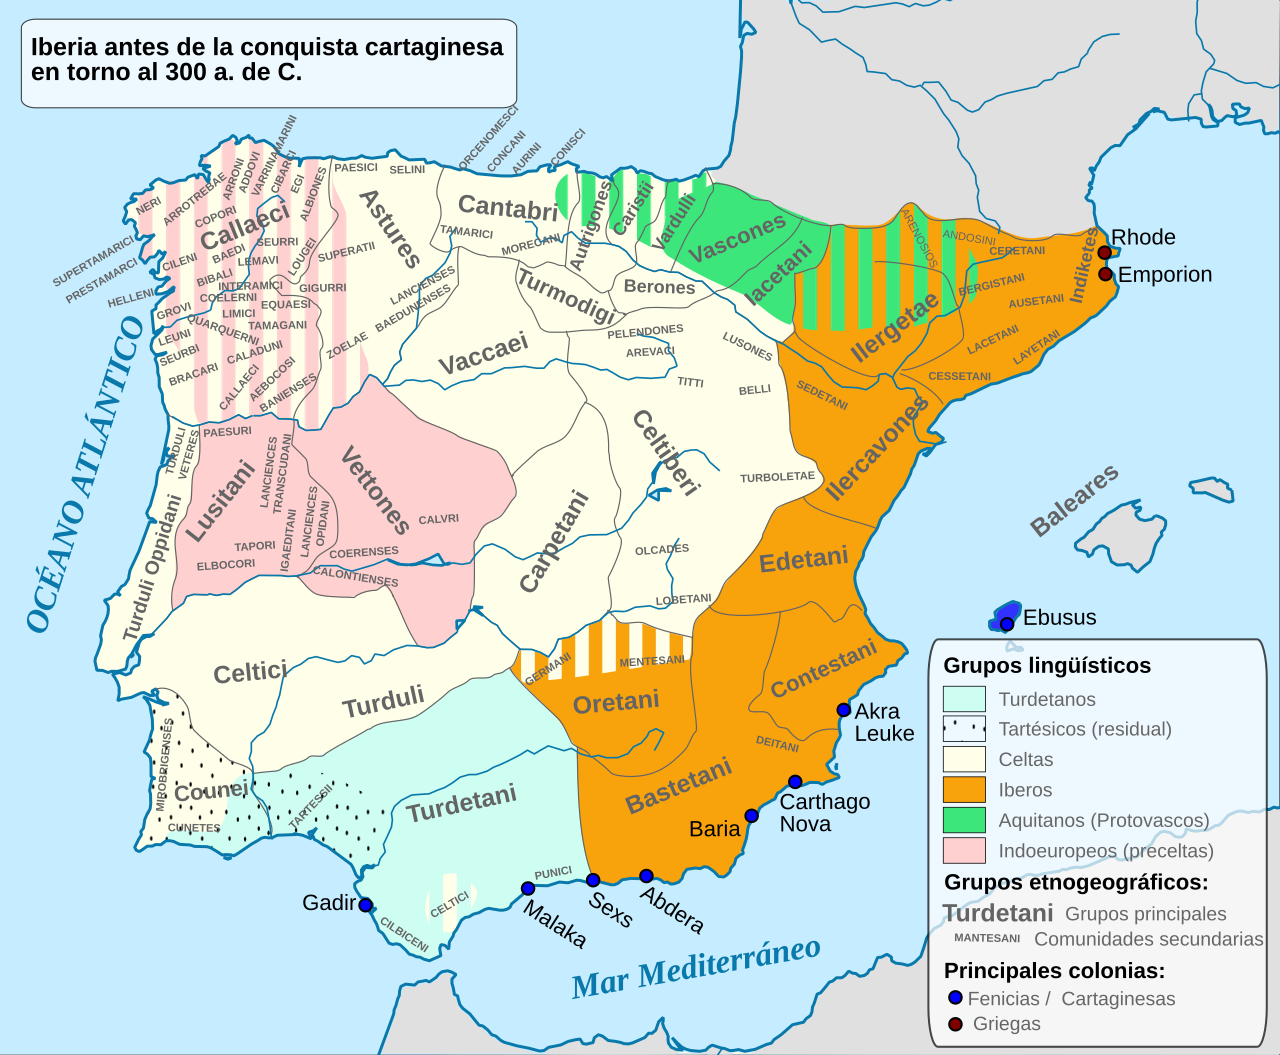 Mapa dels pobles pre romans peninsulars. Font Universitat de Lisboa